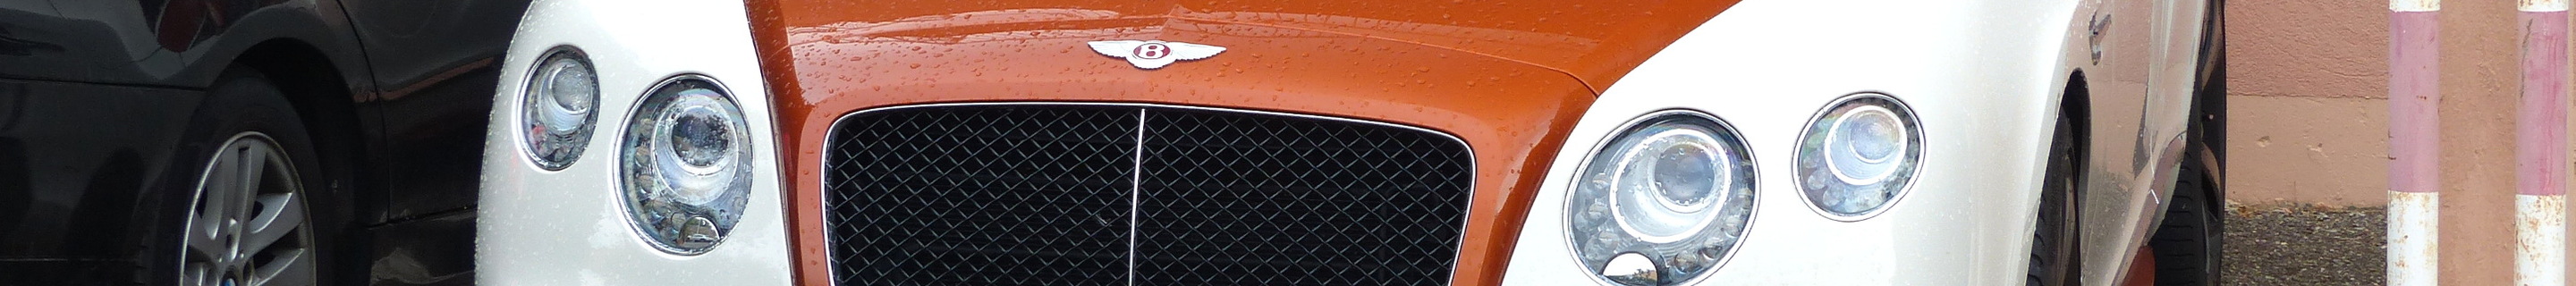 Bentley Continental GTC V8 S 2016 Orange Flame Mulliner